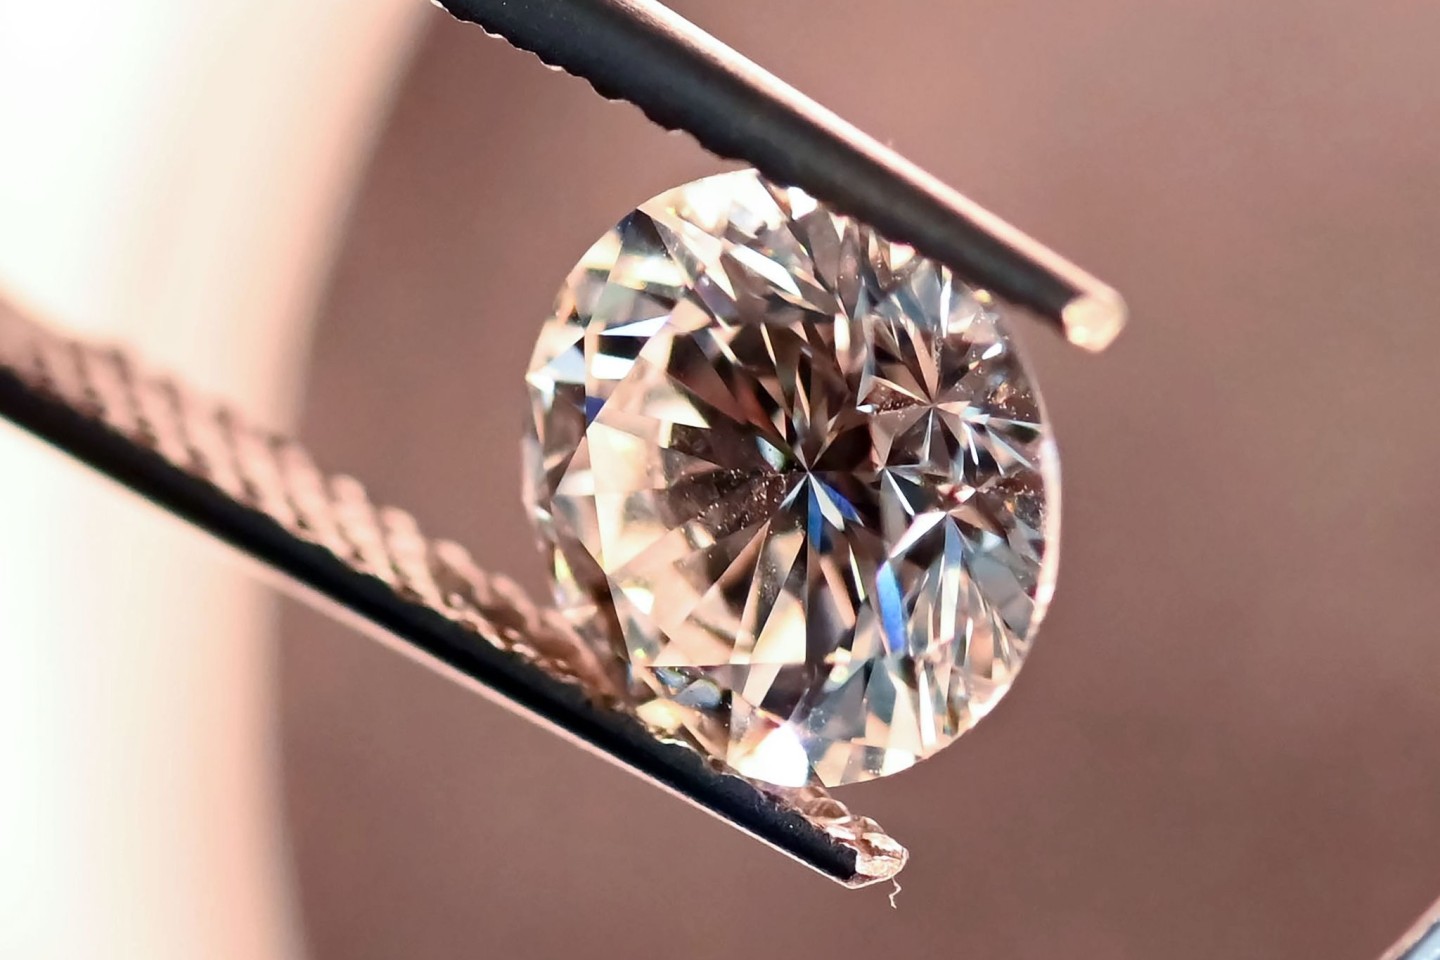 Bei der DDI Stiftung Deutsches Diamant Institut wird ein natürlicher Diamant mit 3,53 Karat in ein Diamantprüfgerät gelegt. Mit dem Gerät wird geprüft ob es sich um synthetische oder na...